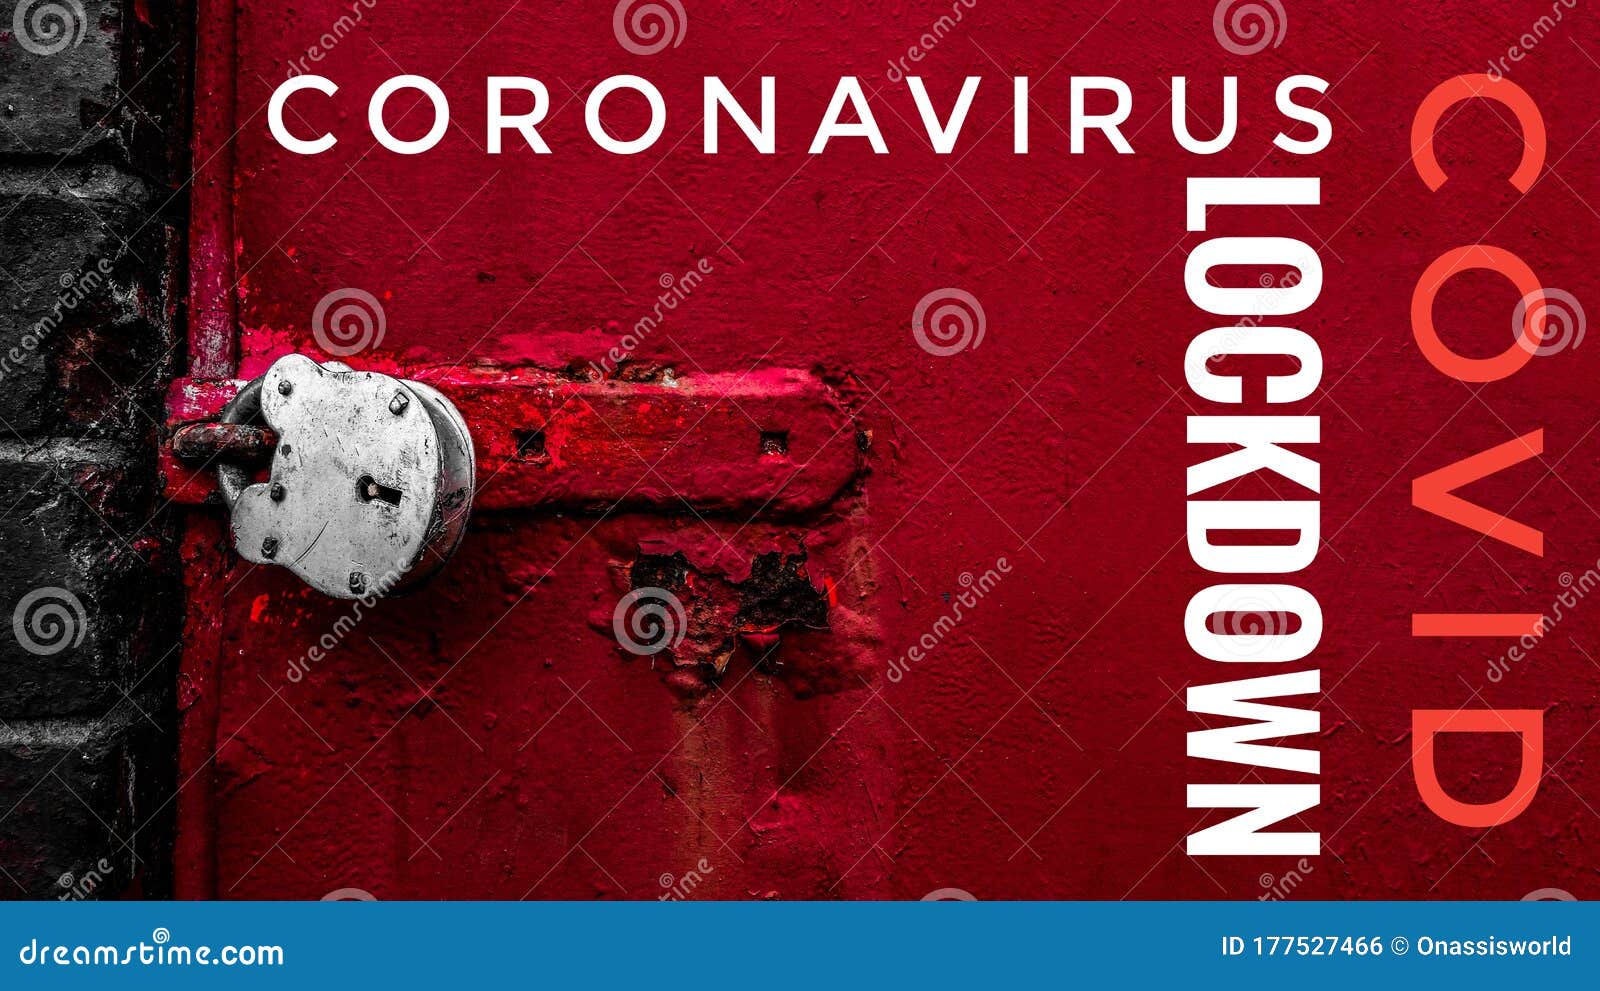 coronavirus covid-19 disease lock down